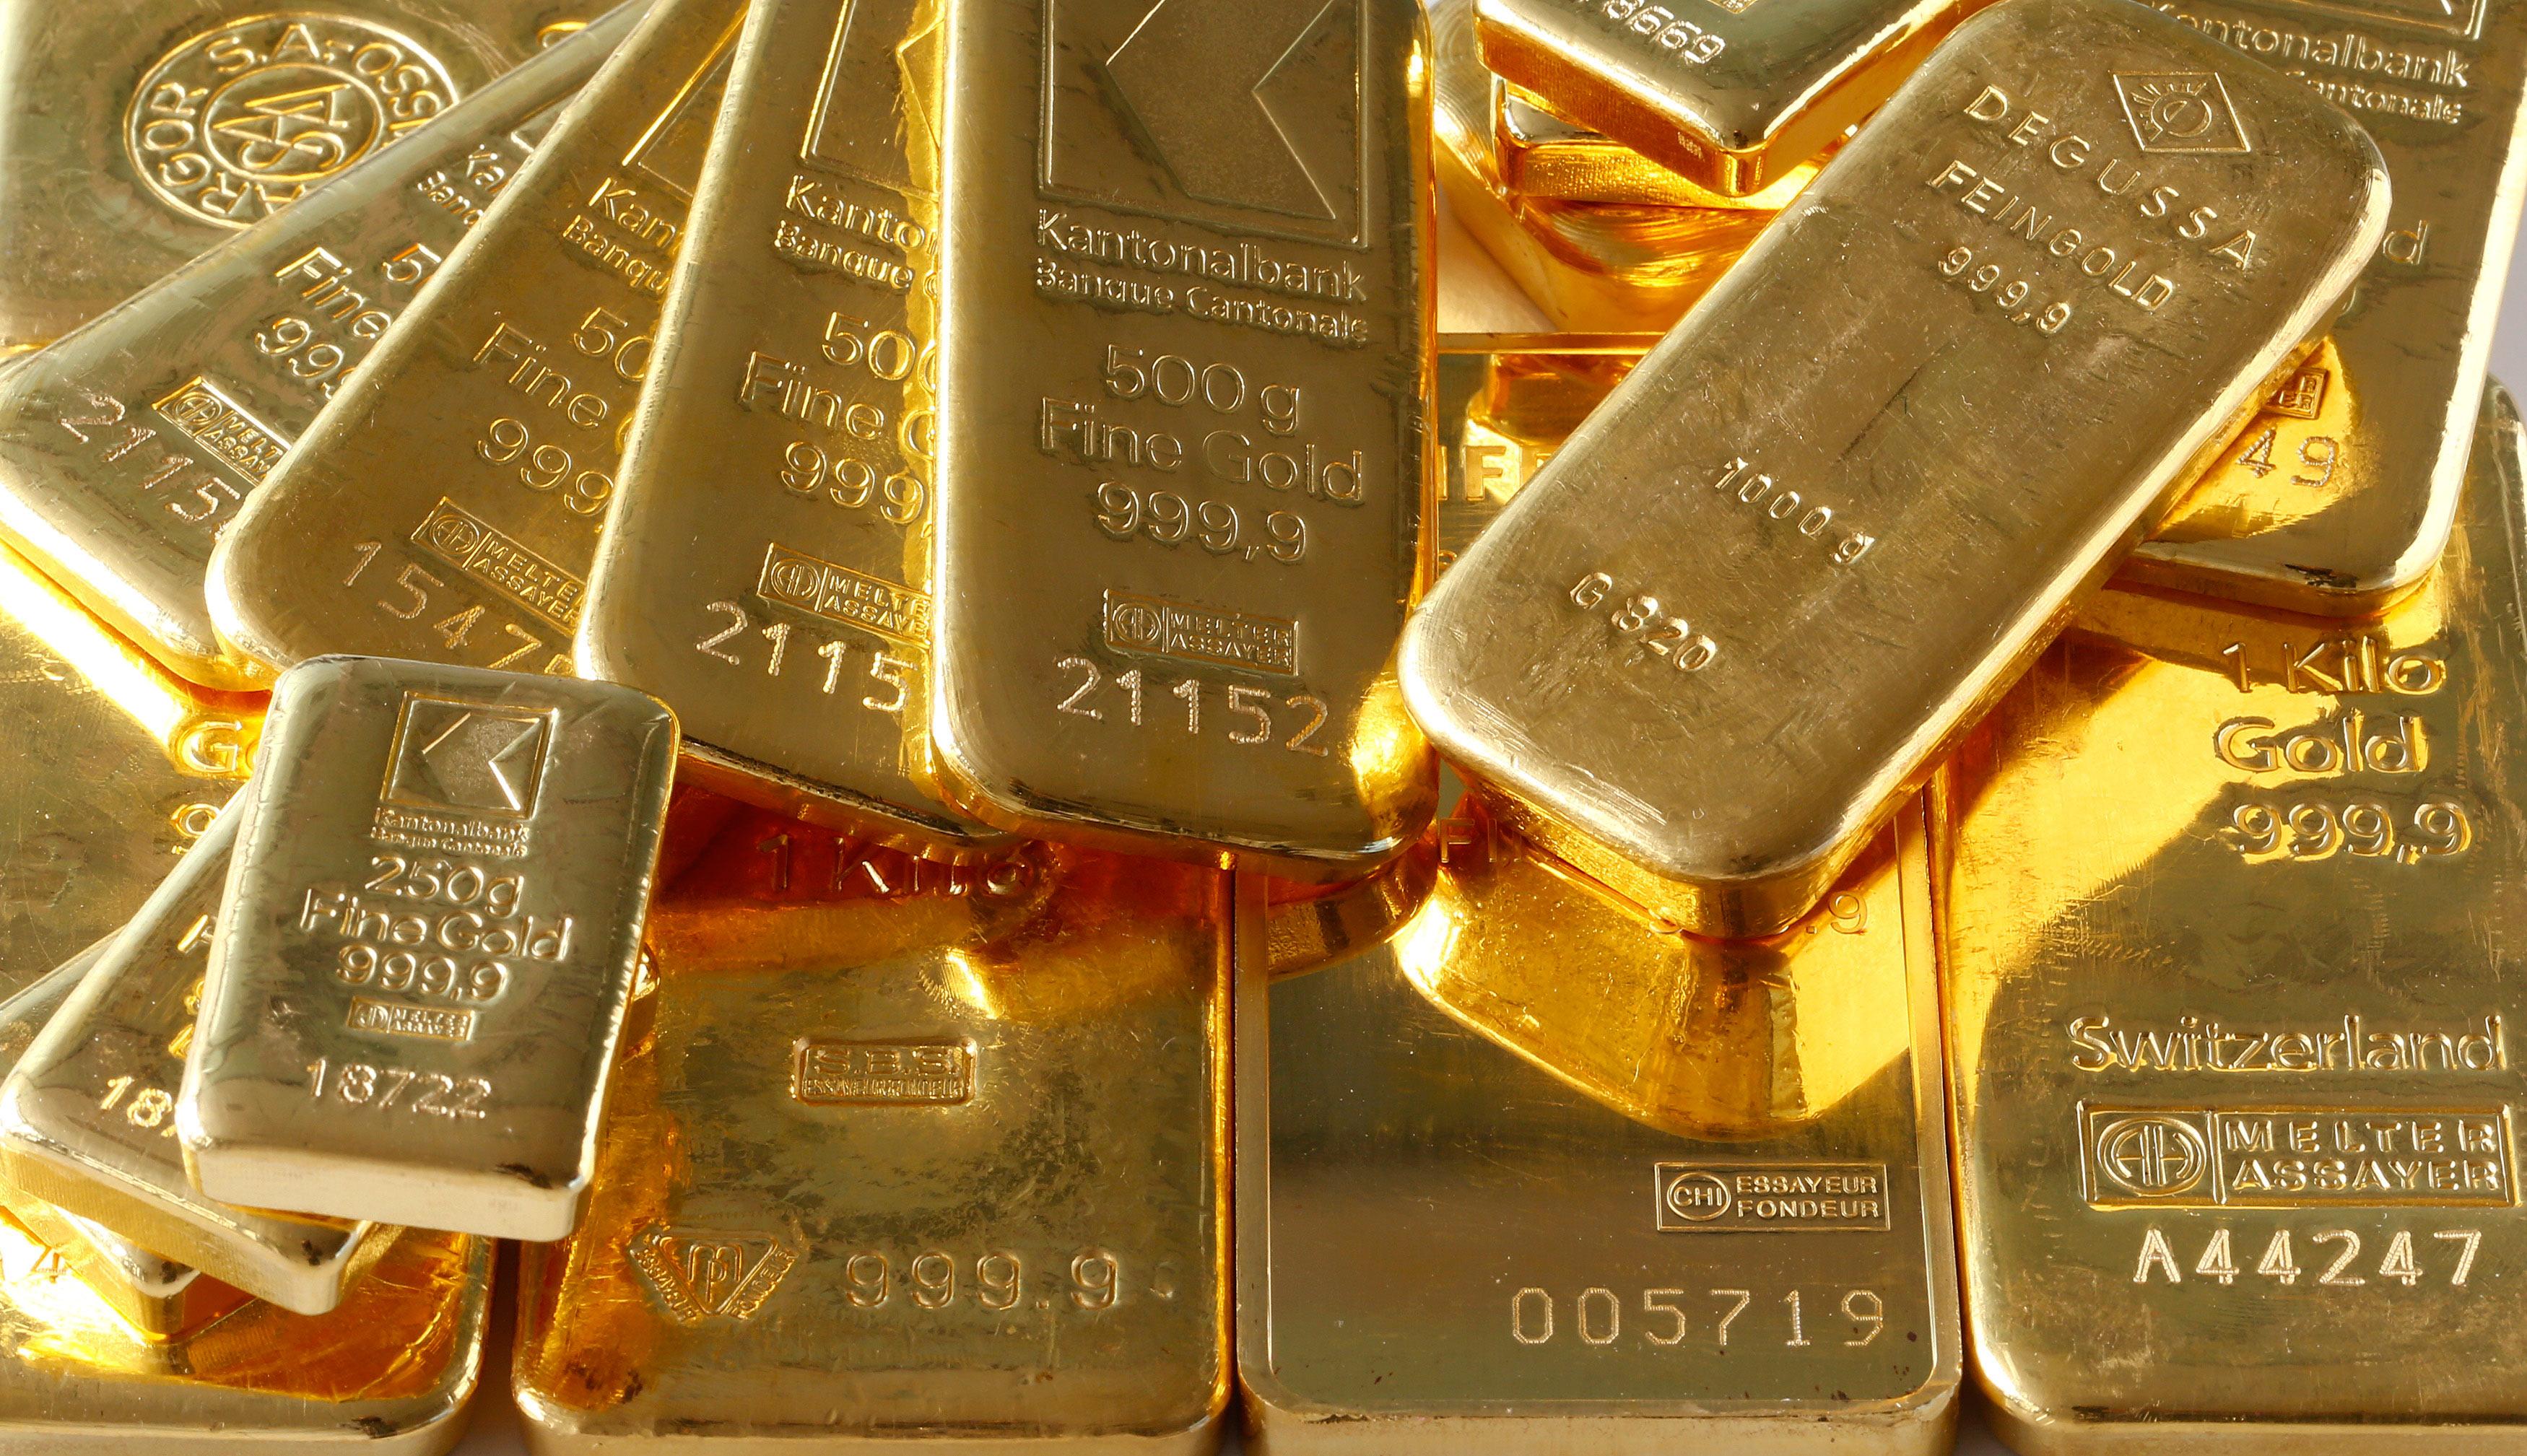 Gold bond monetisation scheme gets cabinet nod